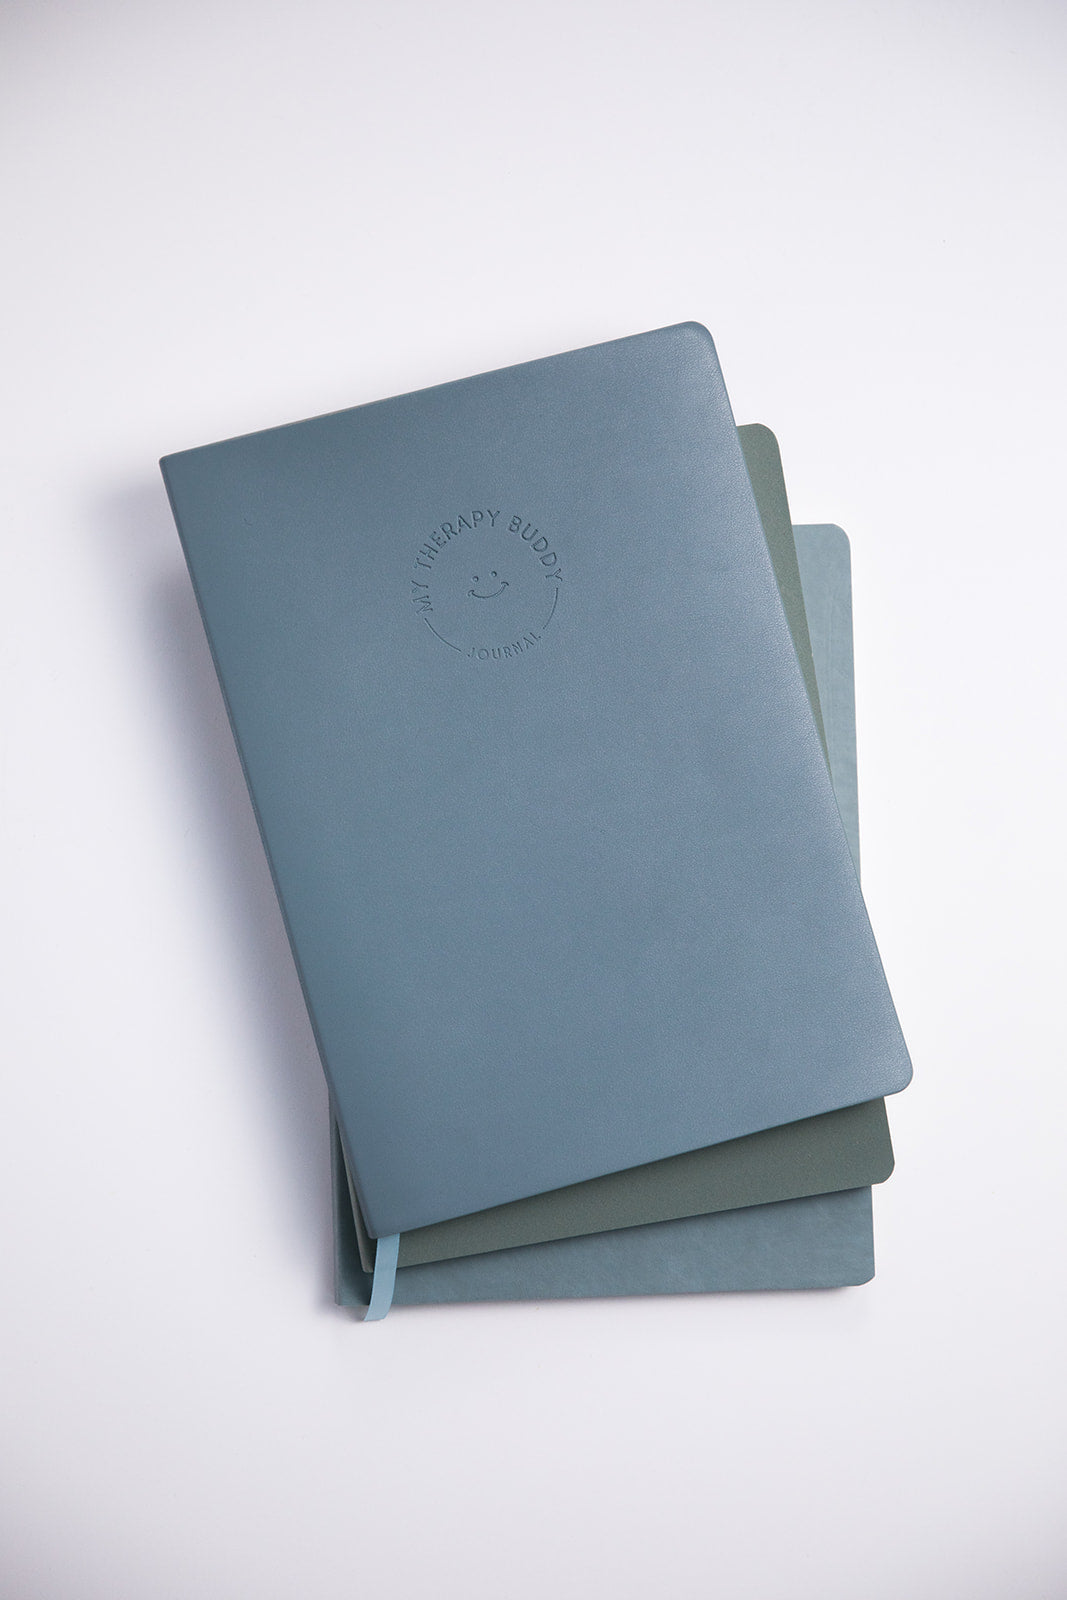 Journal bundle in Feeling Blue